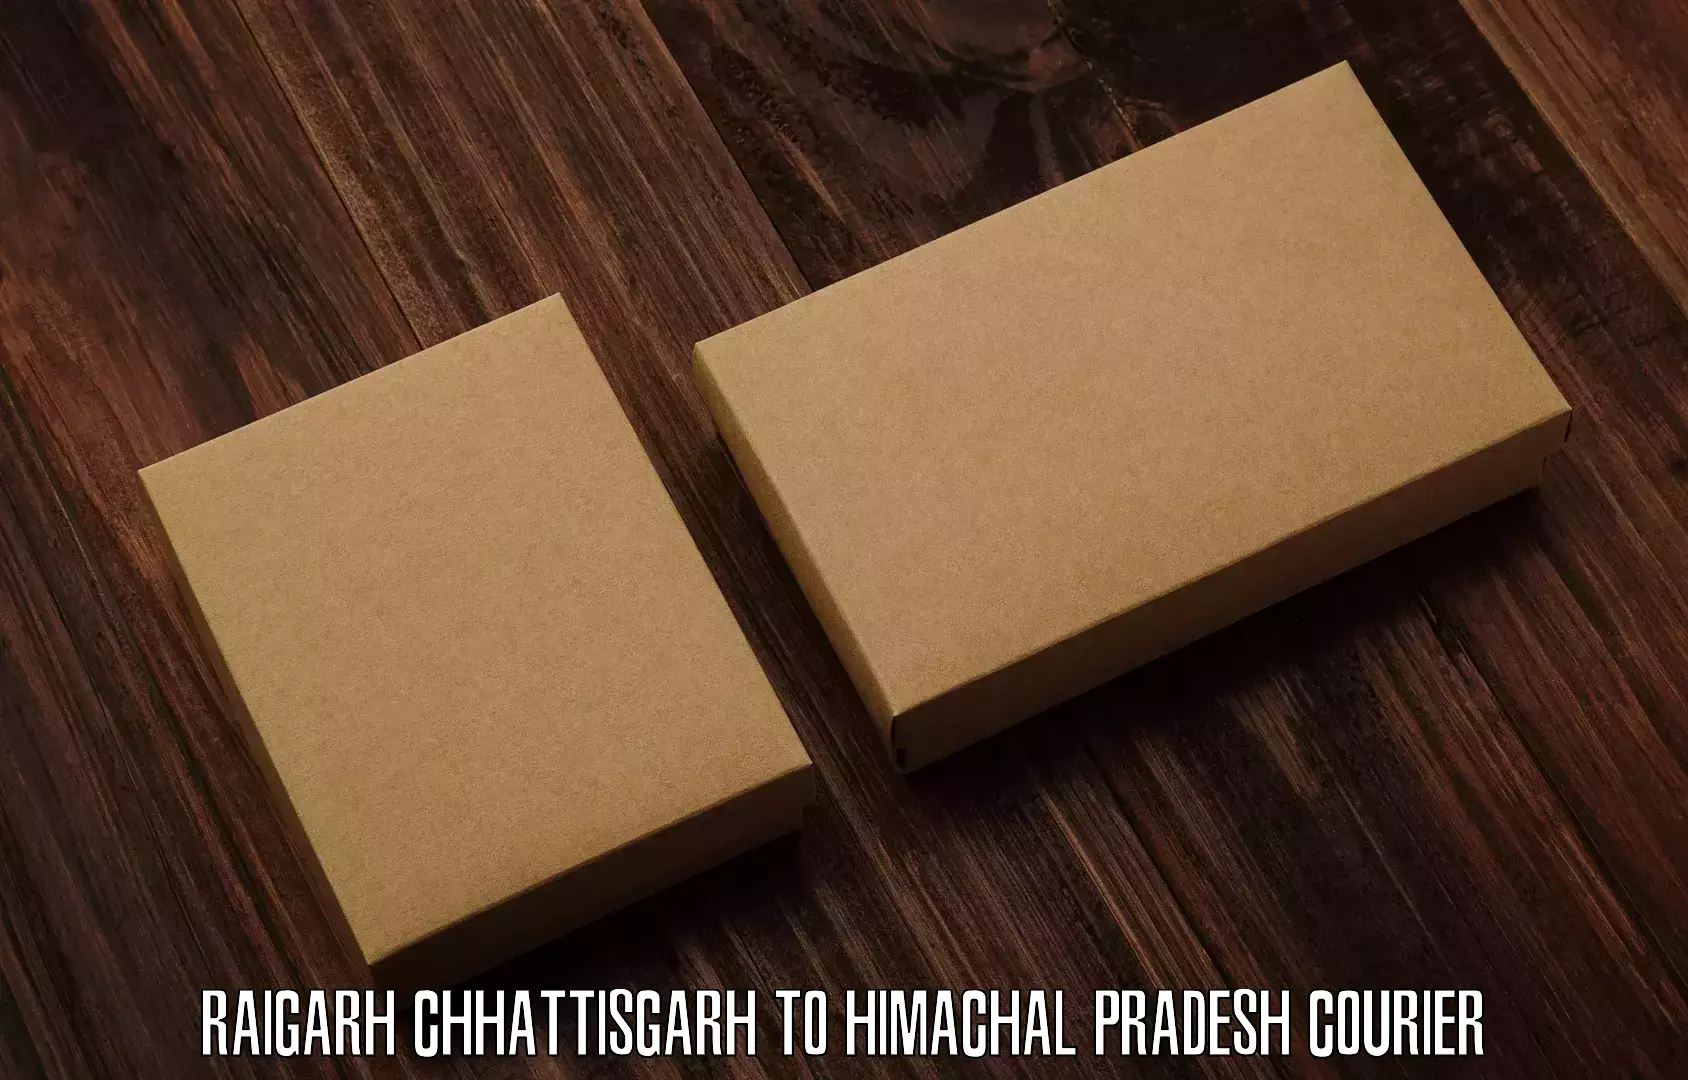 Business shipping needs in Raigarh Chhattisgarh to Himachal Pradesh